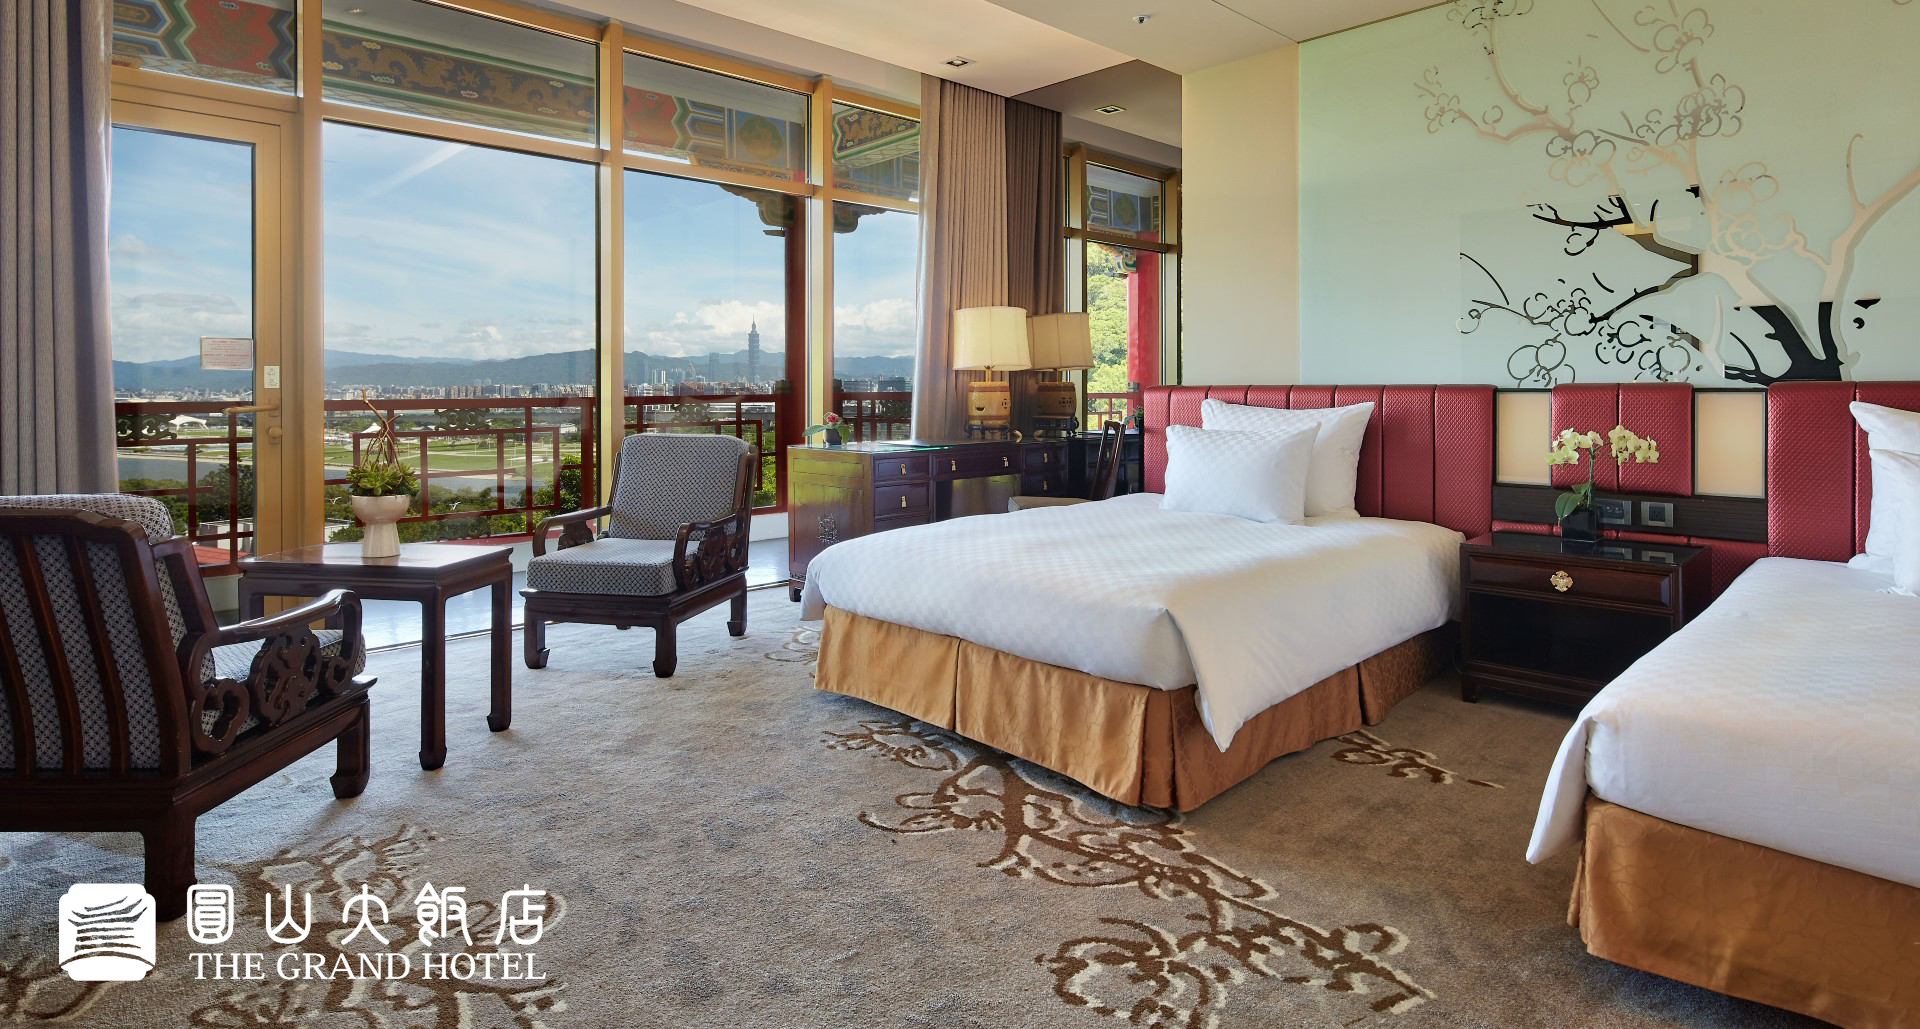 活動期間圓山飯店高級客房每晚享4.3折優惠。圖/圓山大飯店提供